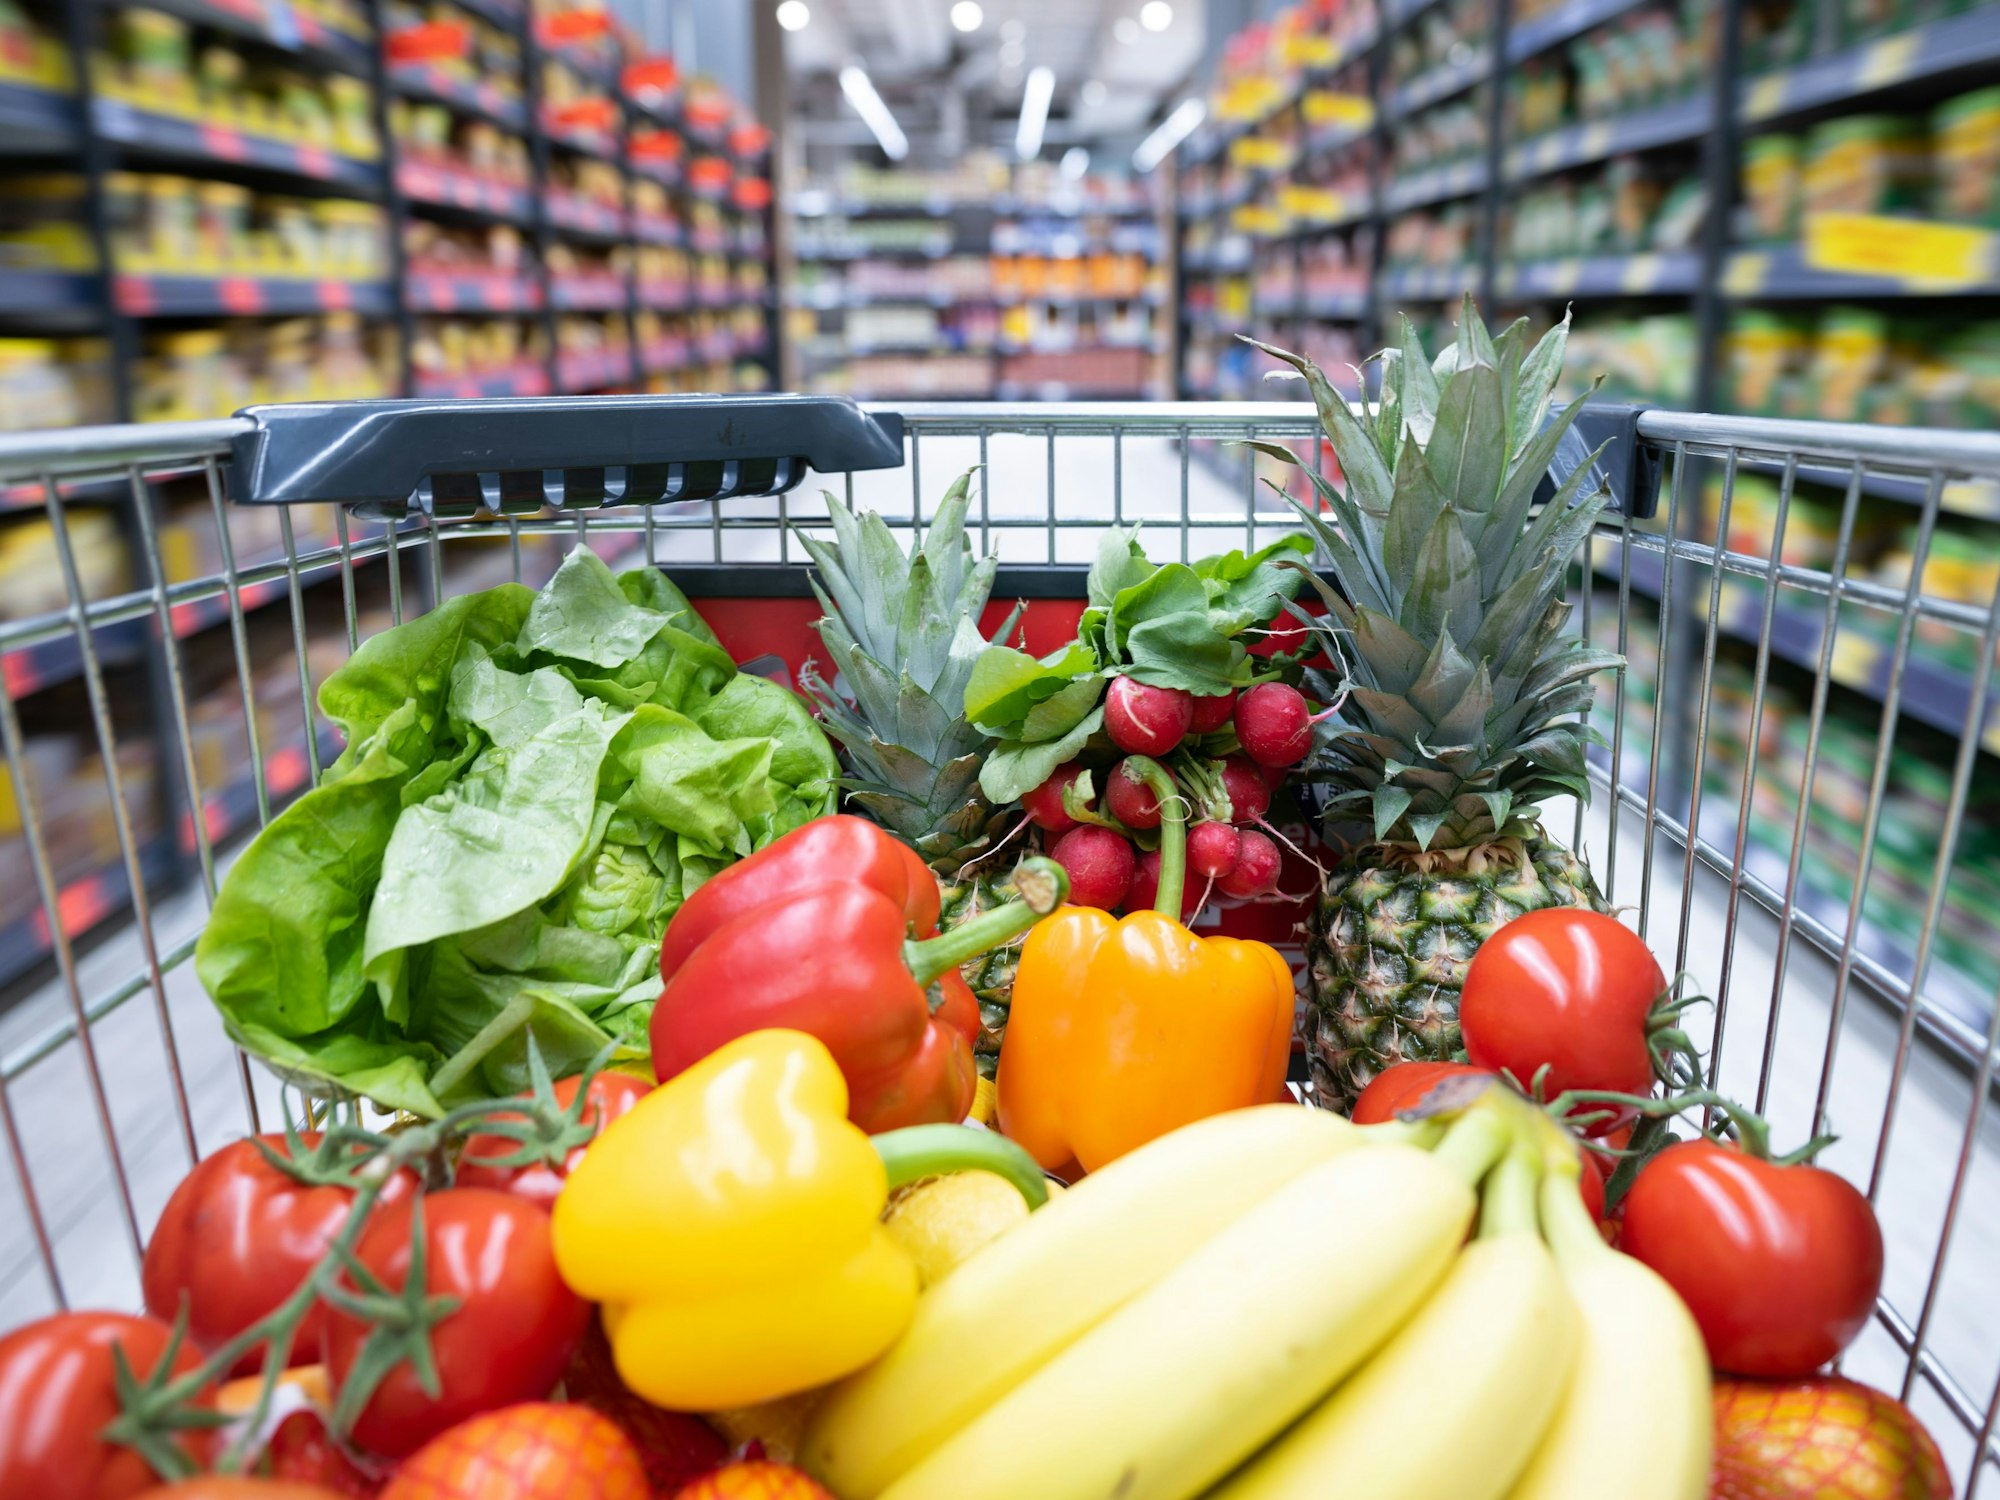 Ein Einkaufskorb mit Obst und Gemüse steht in einem Supermarkt.